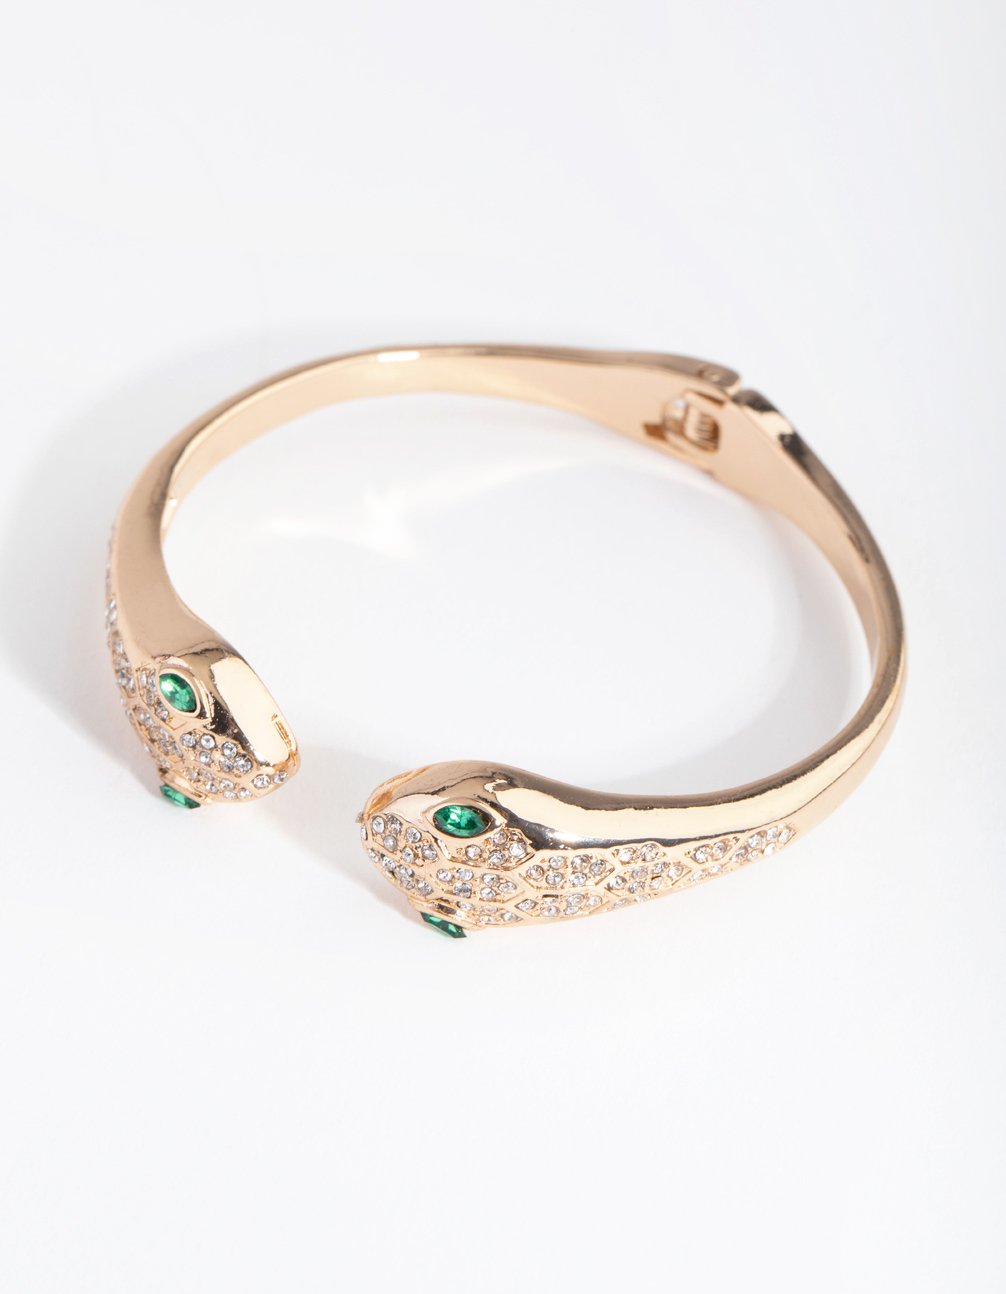 Amazon.com: Presentski Snake Bracelets Gold Open Bangle Cuff Bracelet Snake  Jewelry for Women Girls Serpent Wrap Bypass Bracelet Adjustable: Clothing,  Shoes & Jewelry